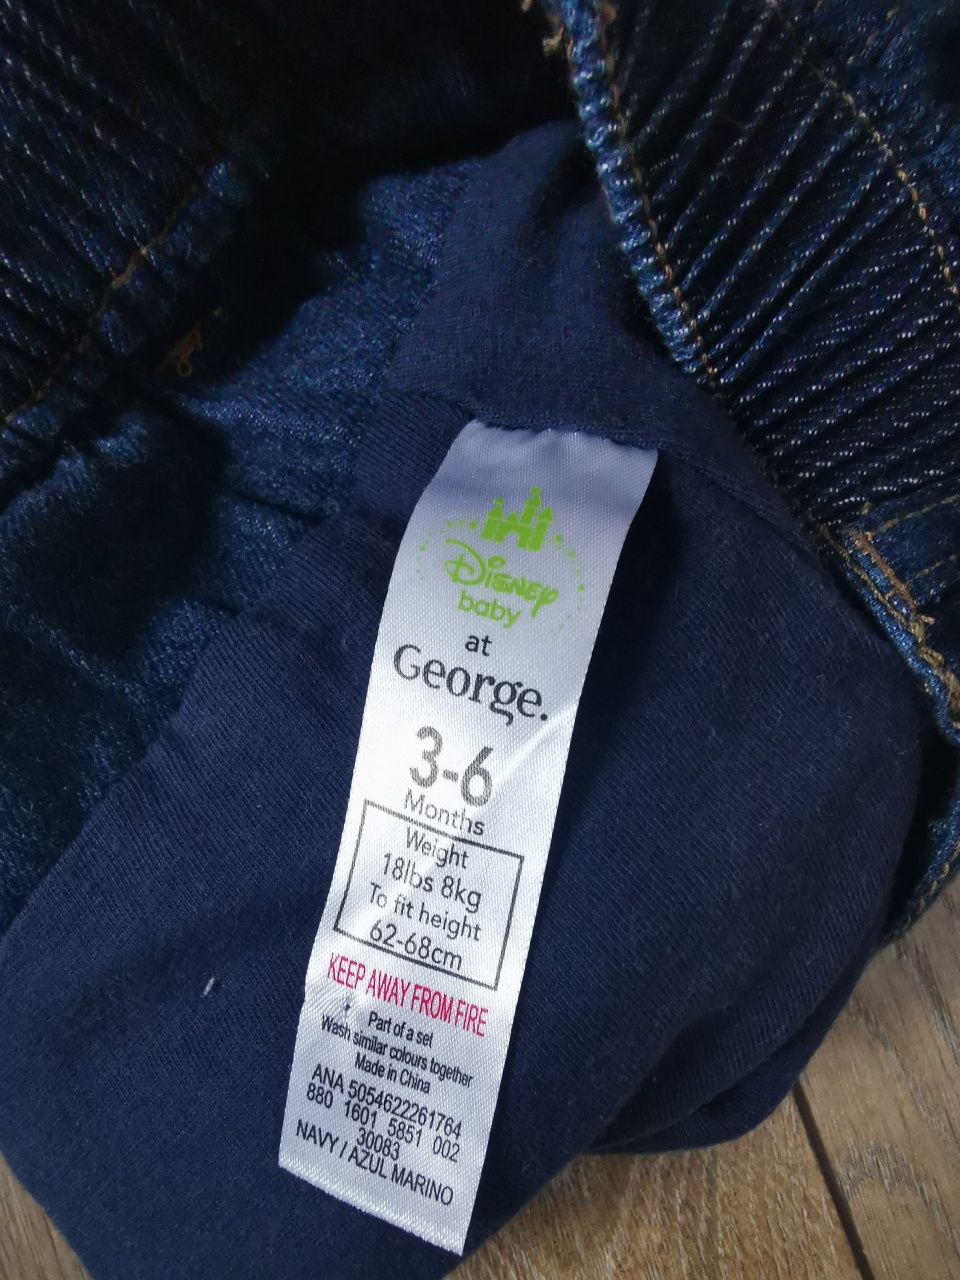 Kamizelka + spodnie jeansy Mickey komplet zestaw George r. 68